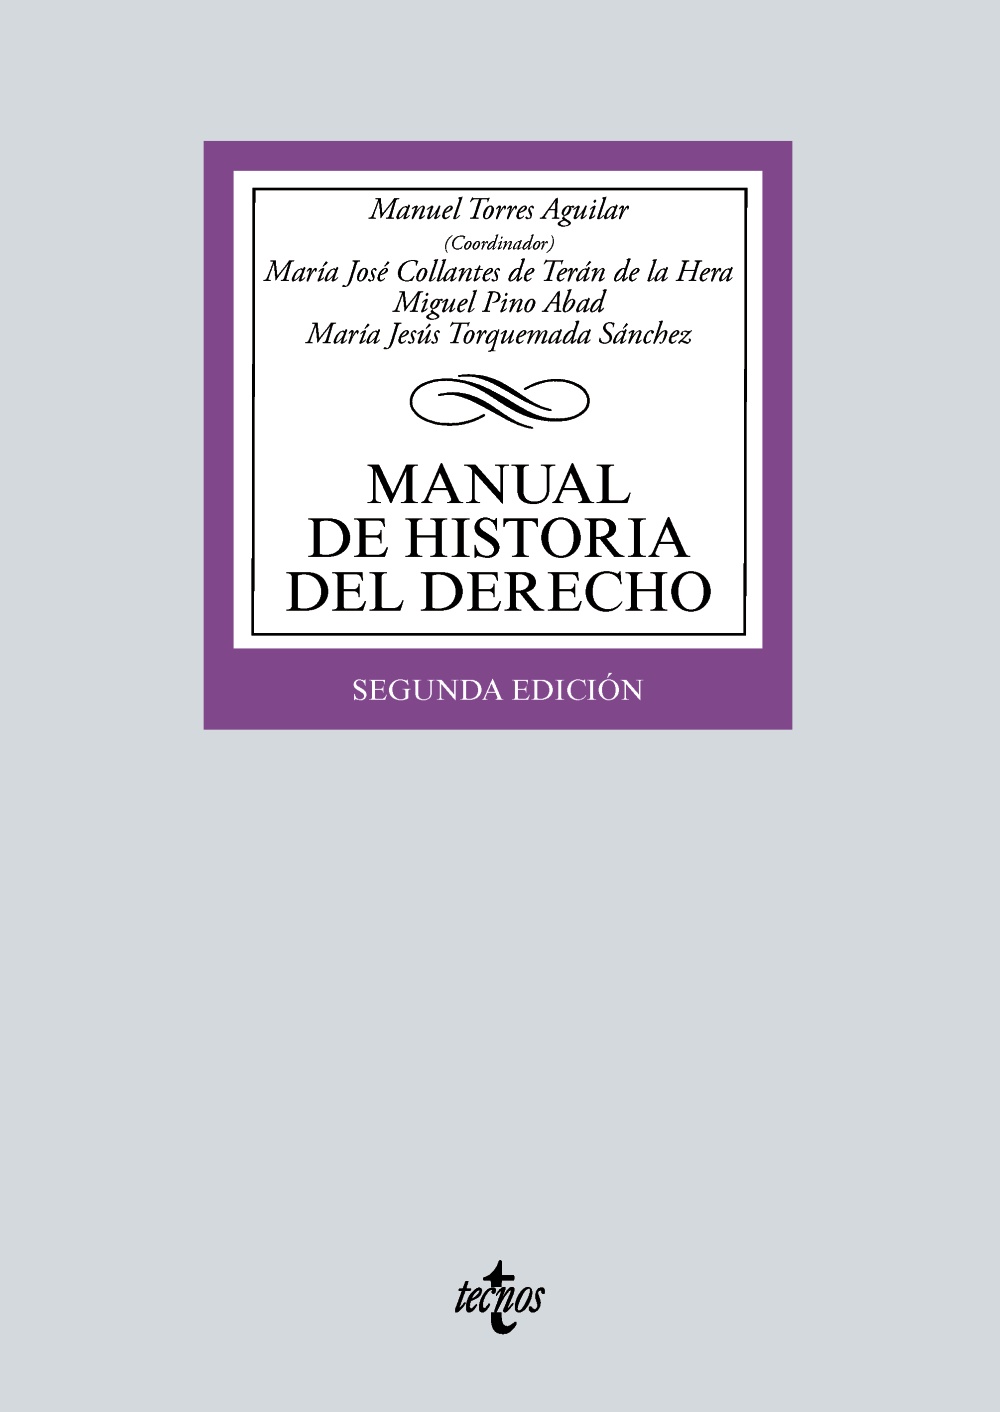 PACK Manual de Historia del Derecho